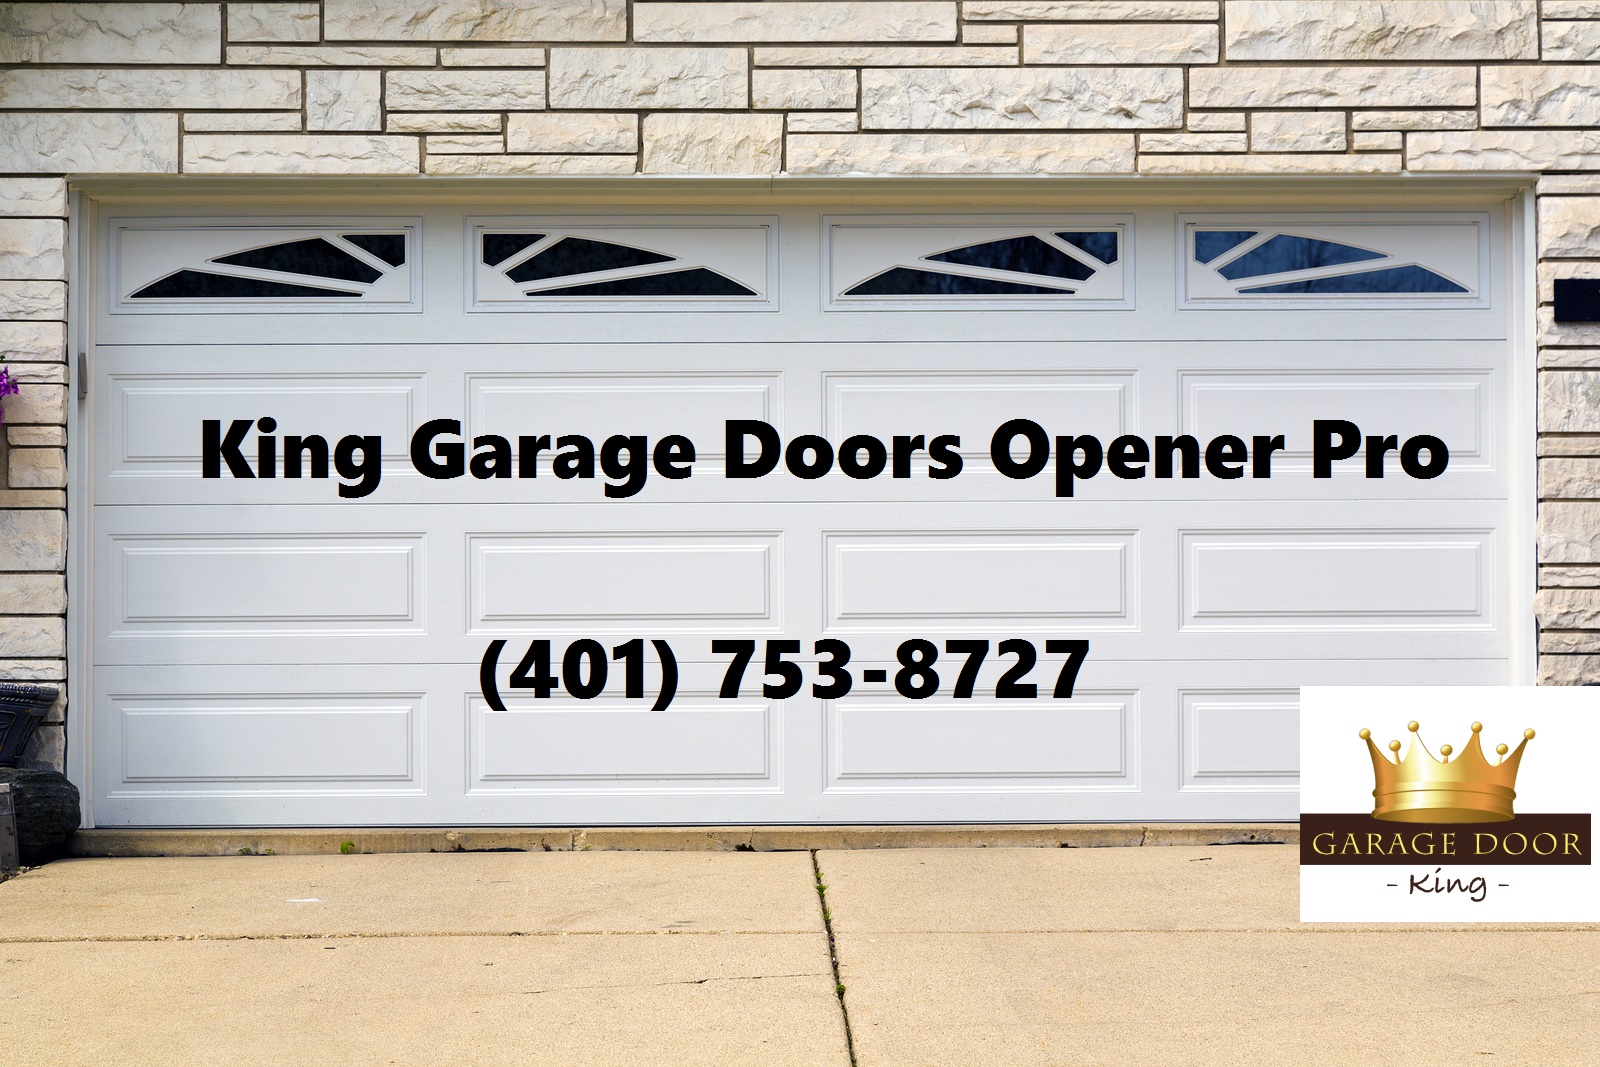 King Garage Doors Opener Pro